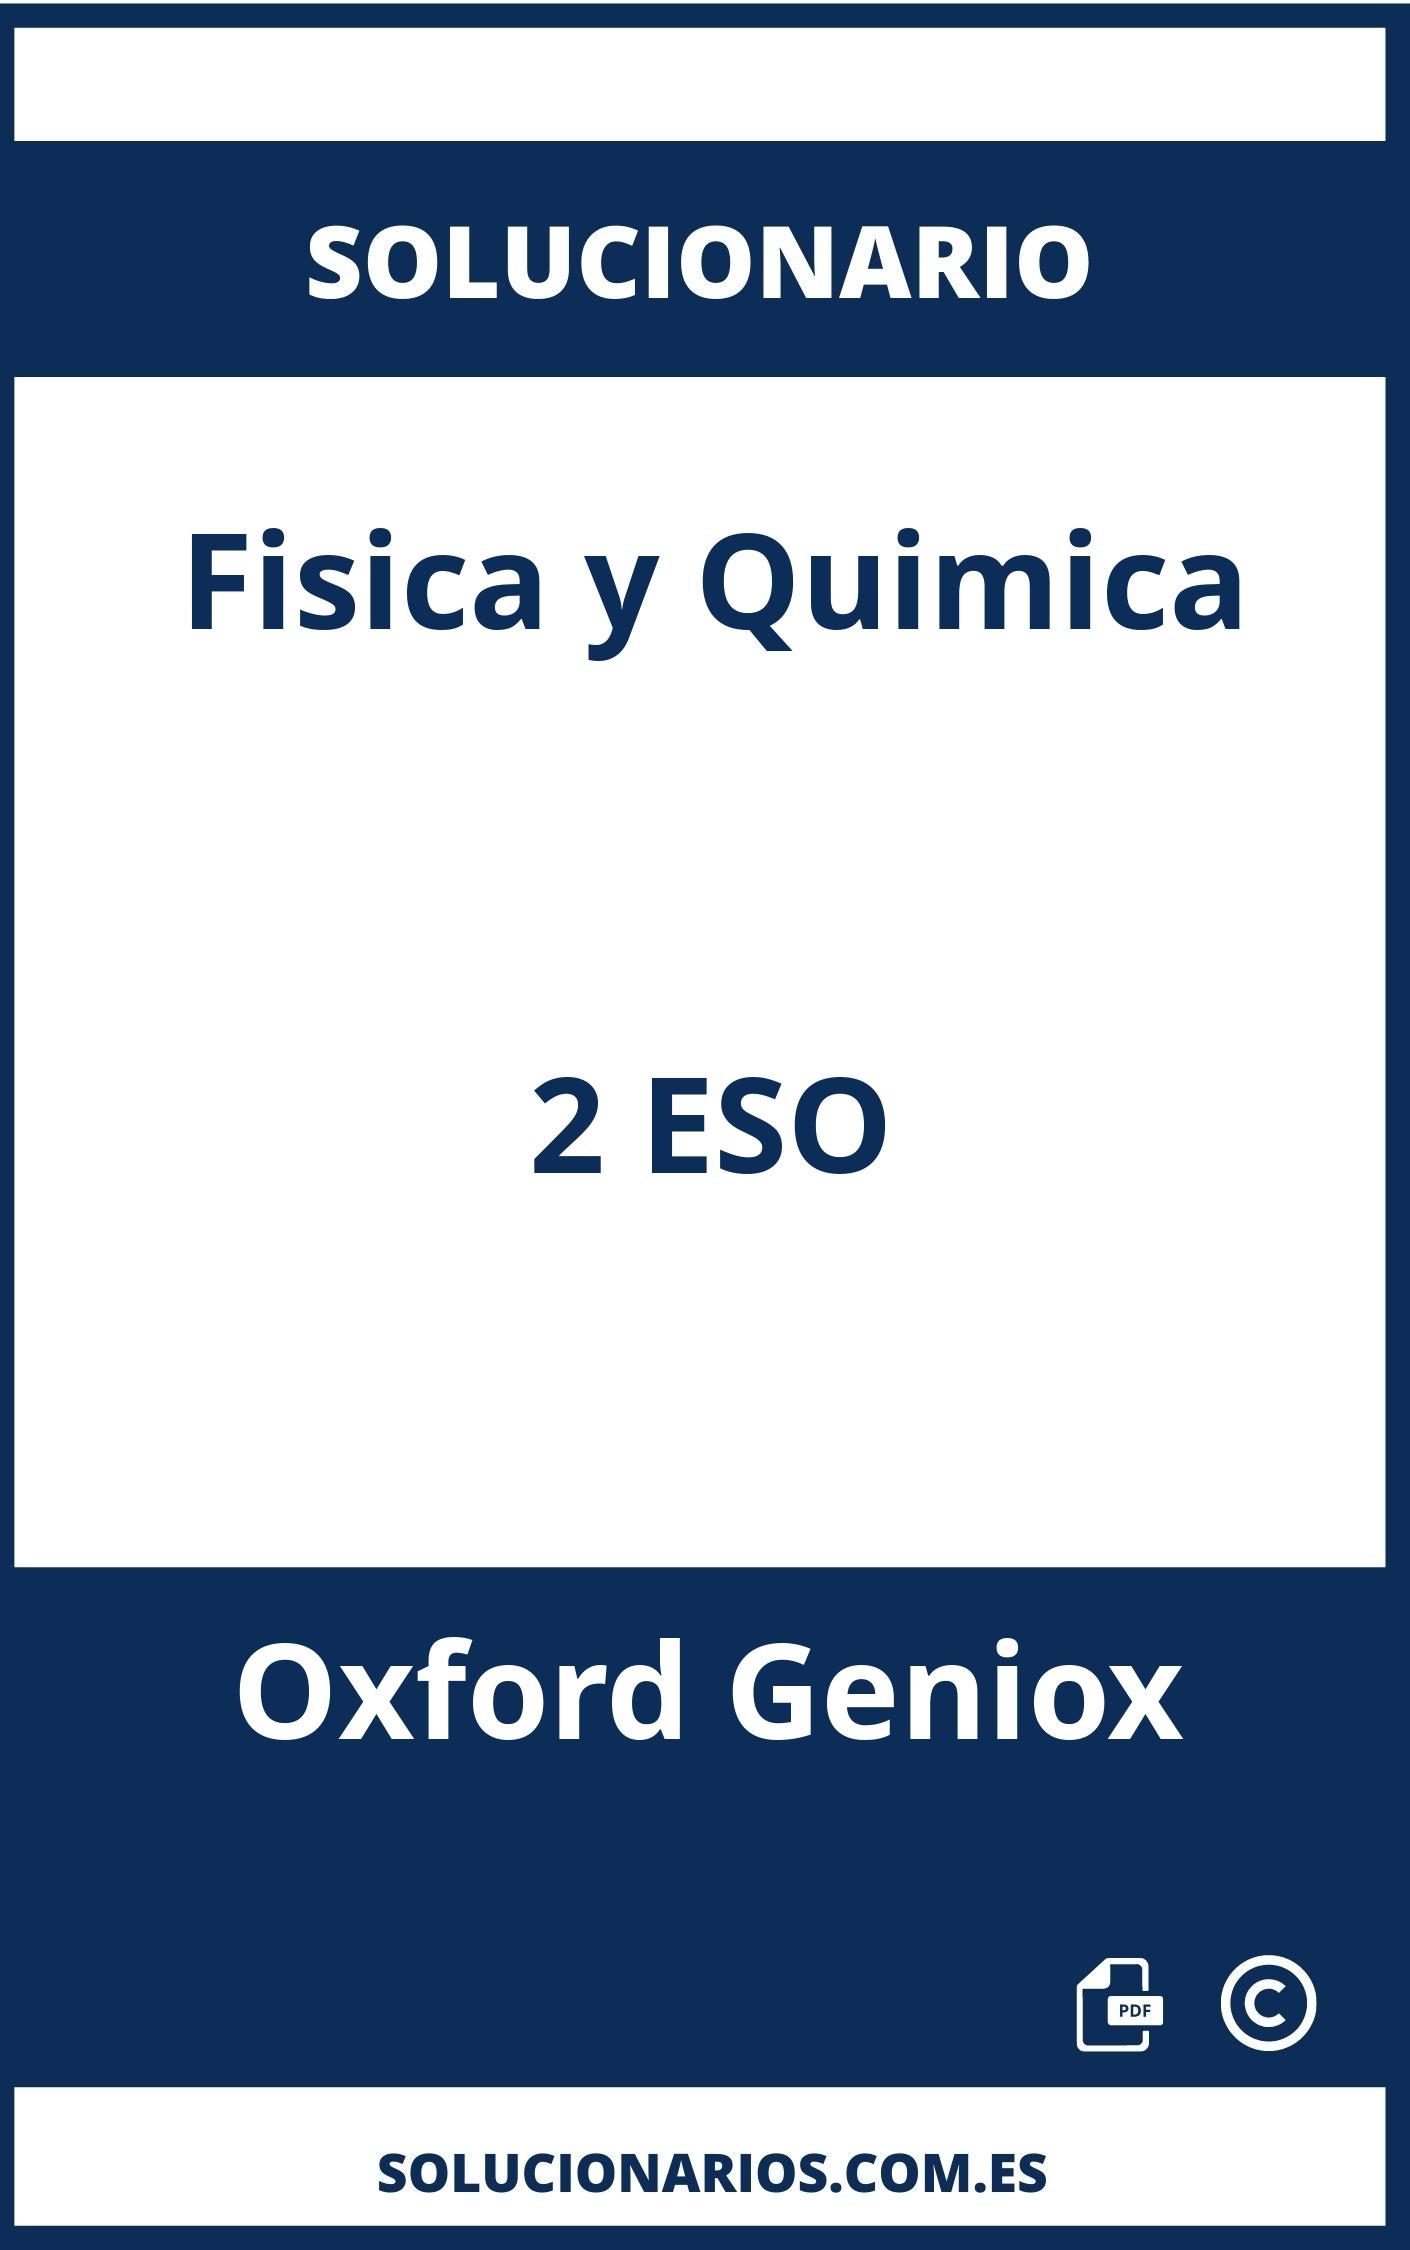 Solucionario De Fisica Y Quimica 2 Eso Oxford Geniox 4197